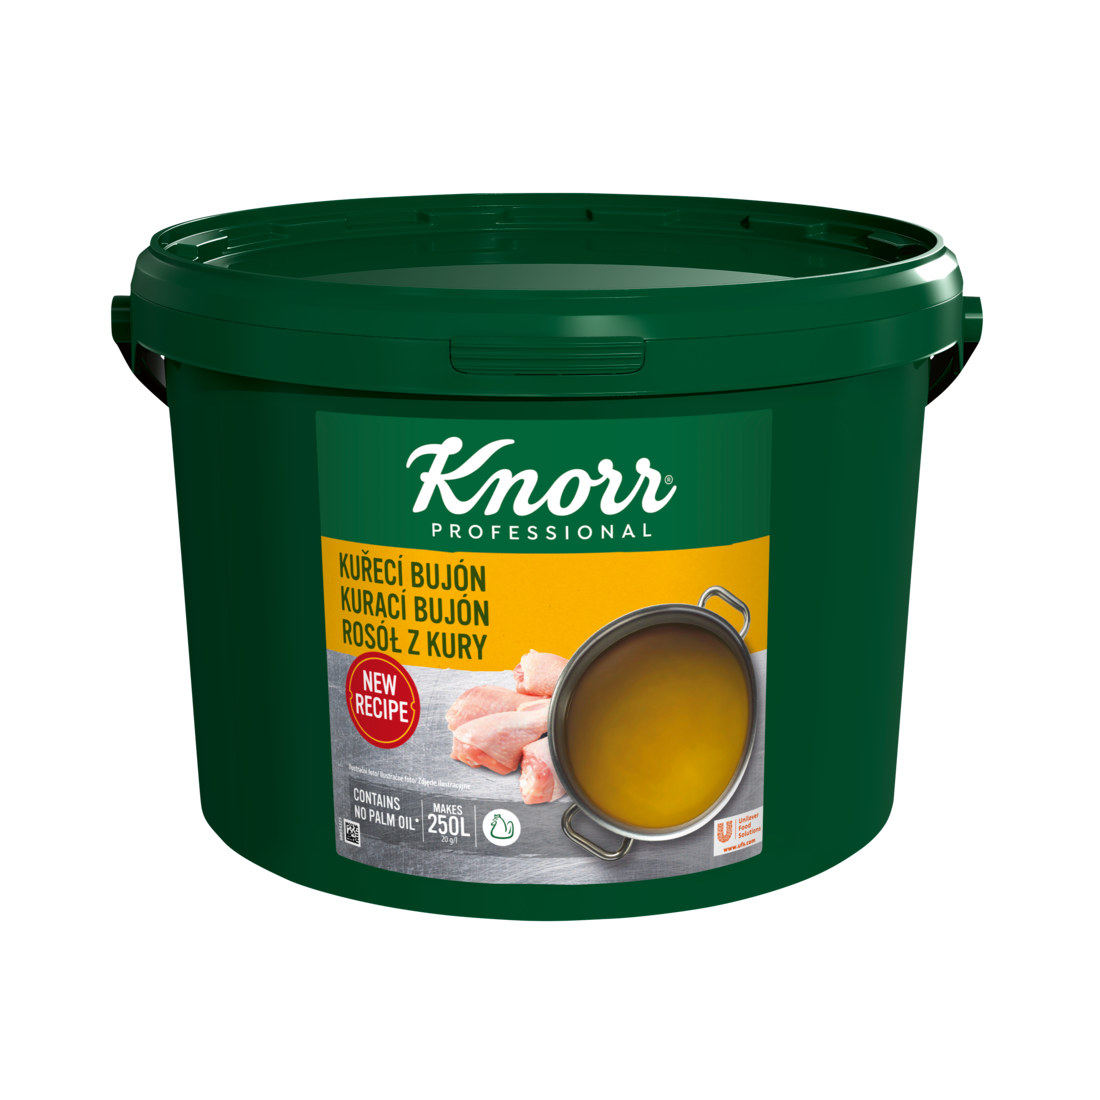 KNORR Professional Kurací bujón 5 kg - Knorr bujóny dodávajú chuť, farbu a správnu konzistenciu polievkam a jedlám.